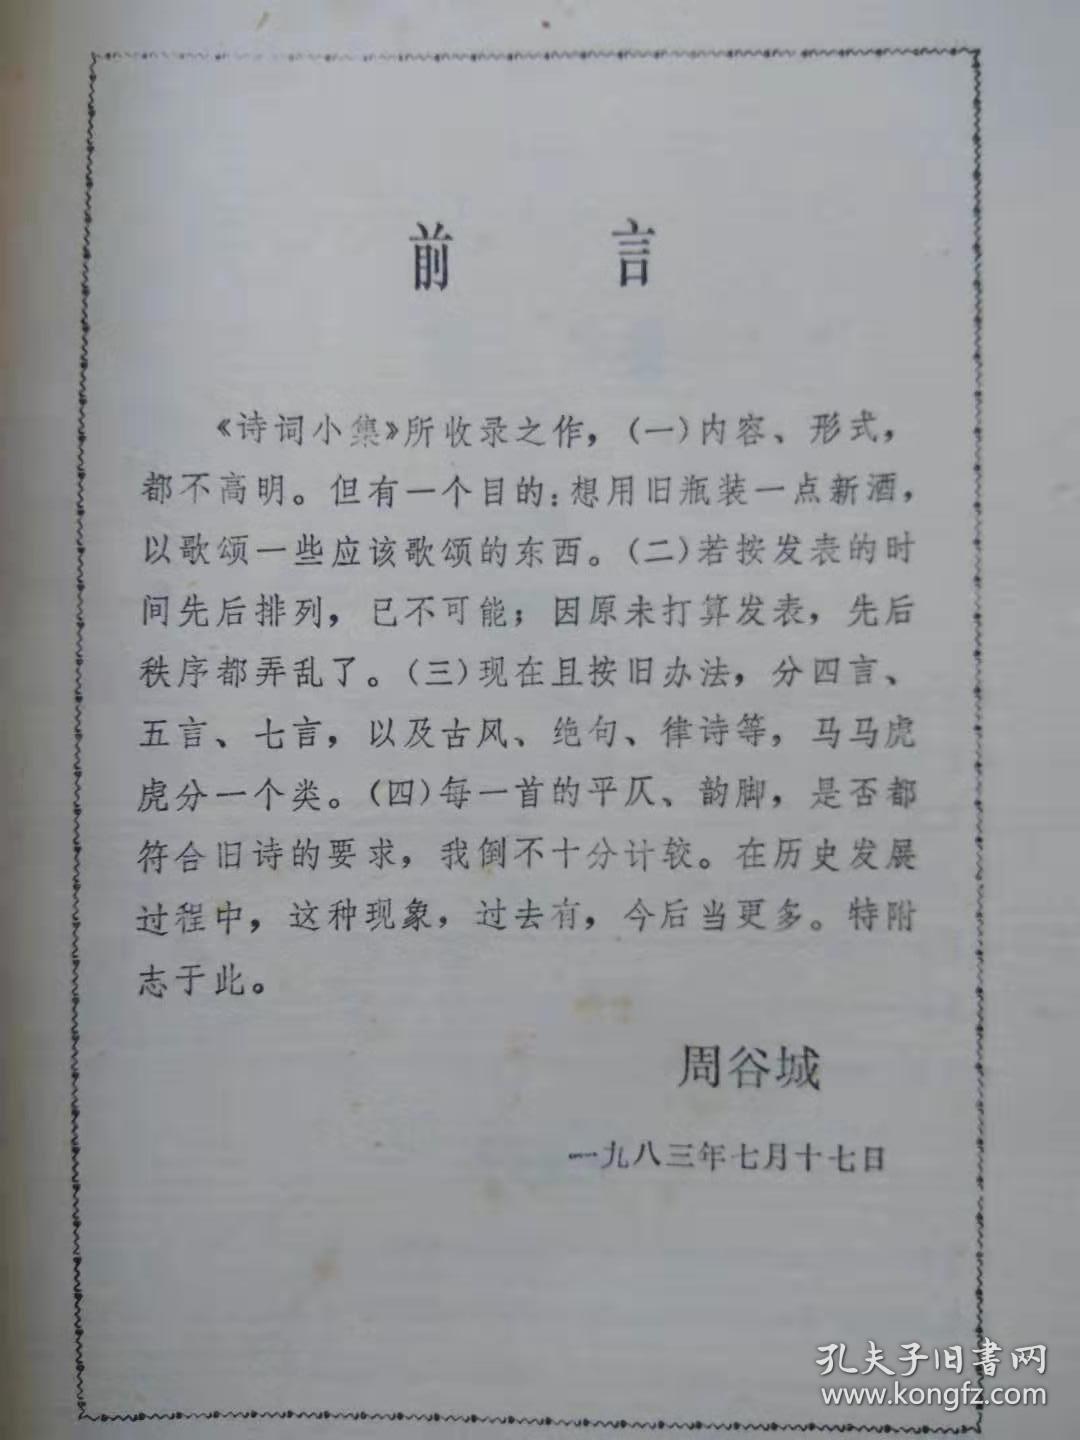 诗词小集--周谷城著。湖南人民出版社。1985年。1版1印